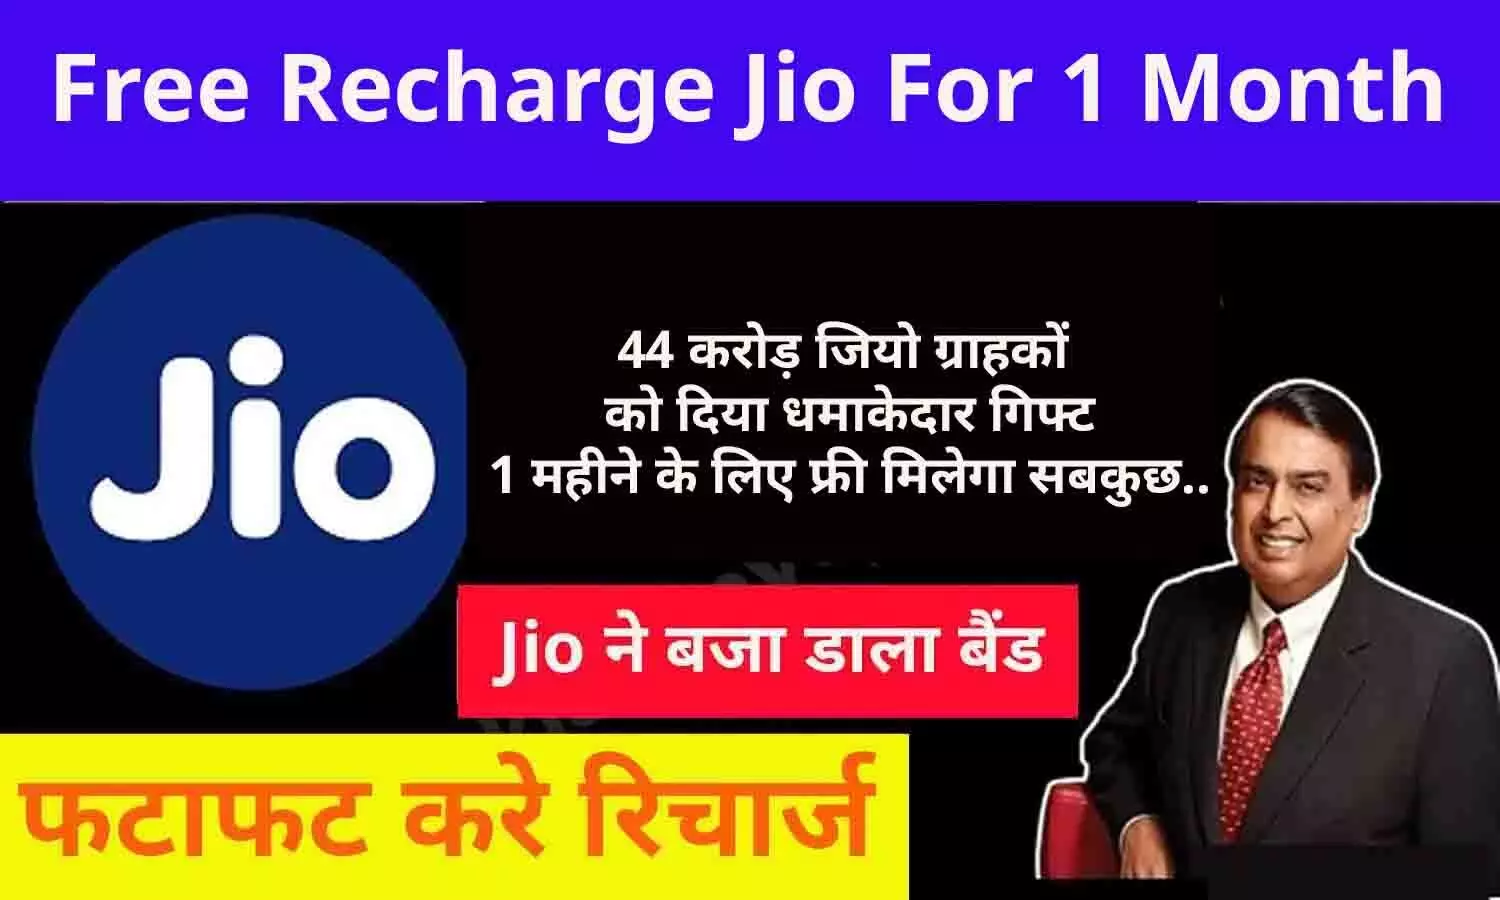 Free Recharge Jio For 1 Month: मुकेश अम्बानी ने दिया 44 करोड़ जियो ग्राहकों को दिया धमाकेदार गिफ्ट, 1 महीने के लिए फ्री मिलेगा सबकुछ..जानिए पूरा ऑफर्स